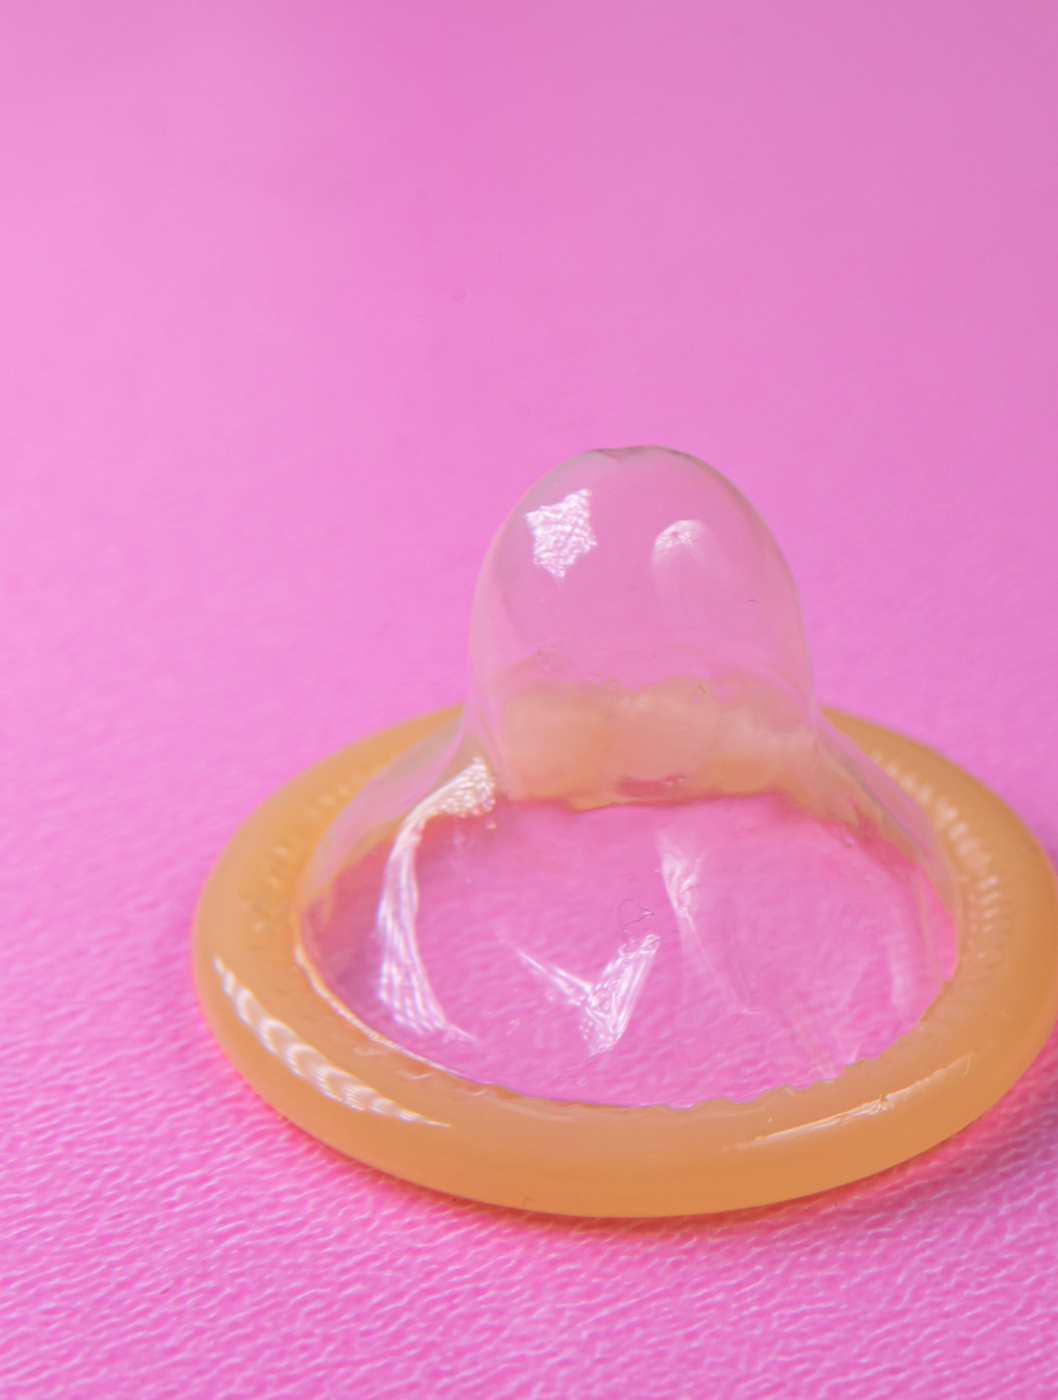 En ny opfindelse er sat i sø, nemlig et unisex-kondom, som kan bruges af både mænd og kvinder. Læs alt om kondomet her.